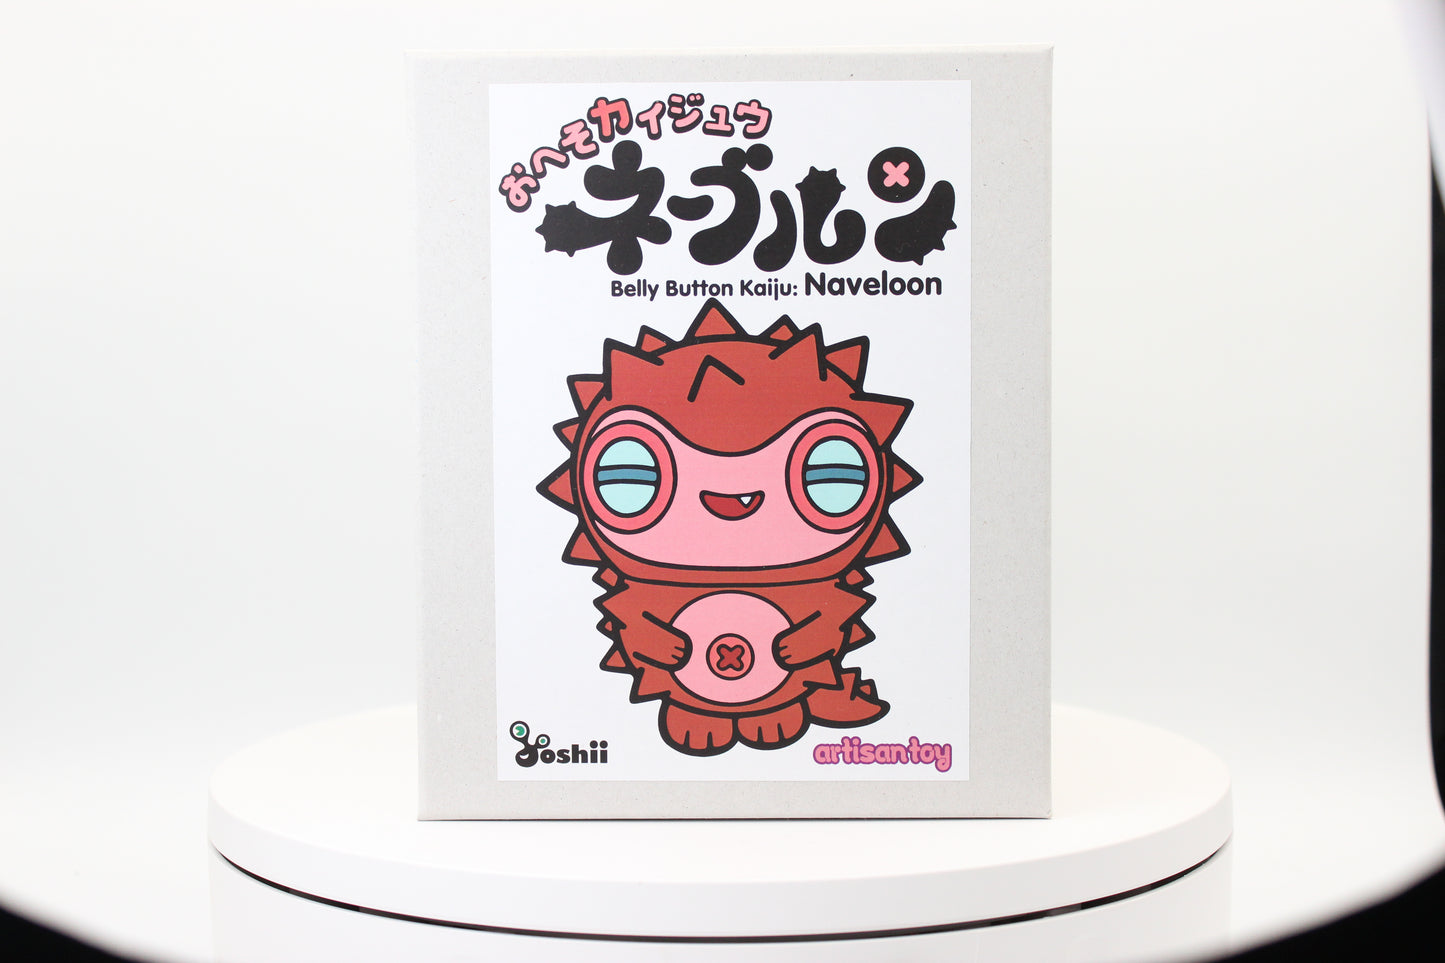 HIroshi Yoshii "Belly Button Kaiju: Naveloon”